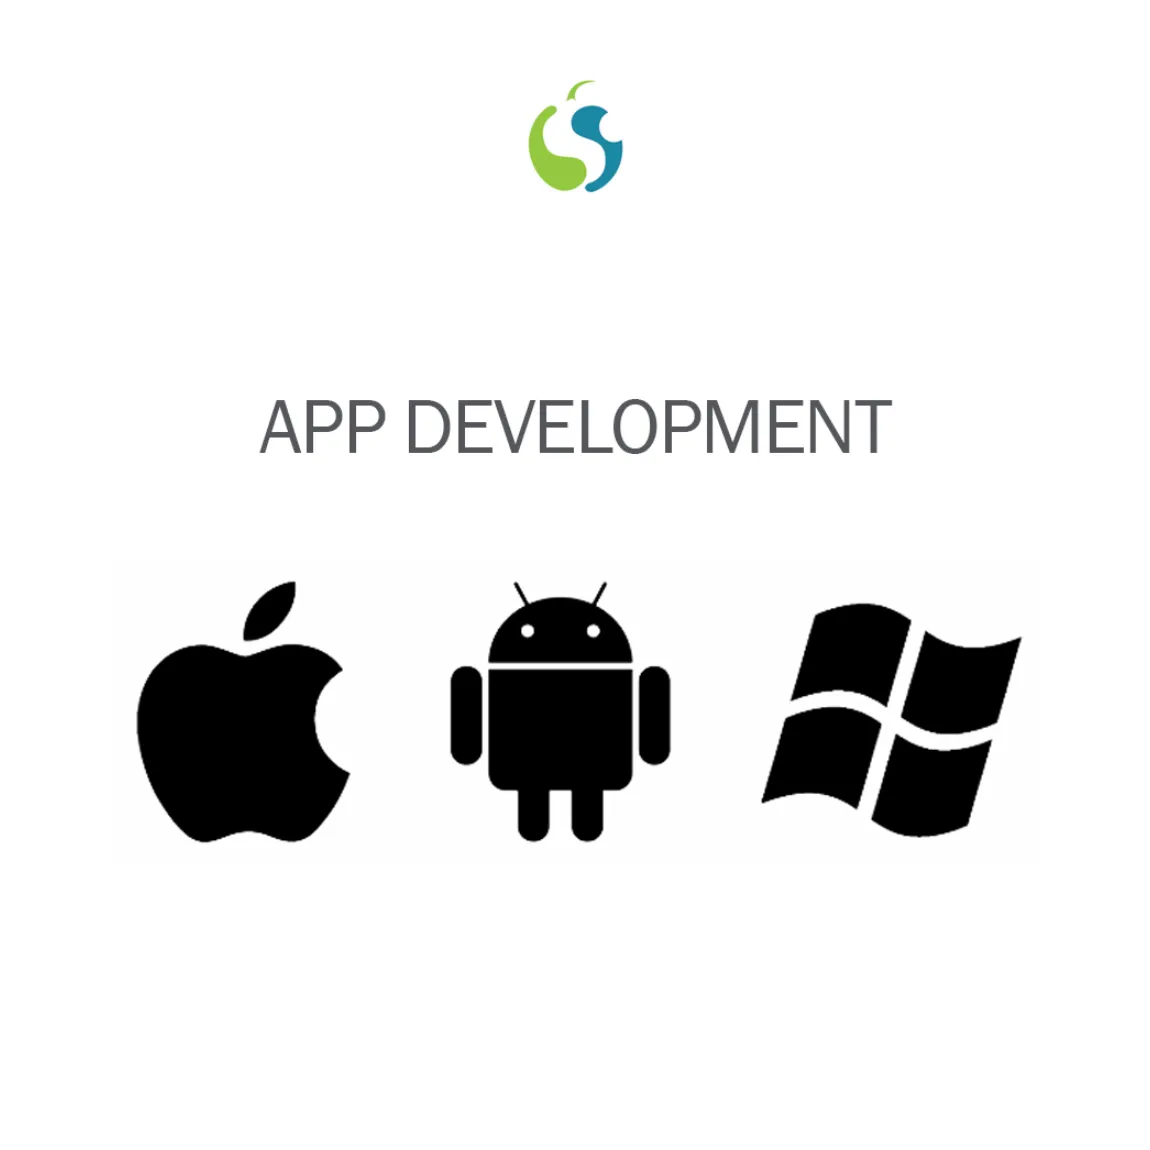 効果的な設計のために最新の技術とツールを使用するインドの高機能で堅牢なアプリ開発サービスプロバイダー